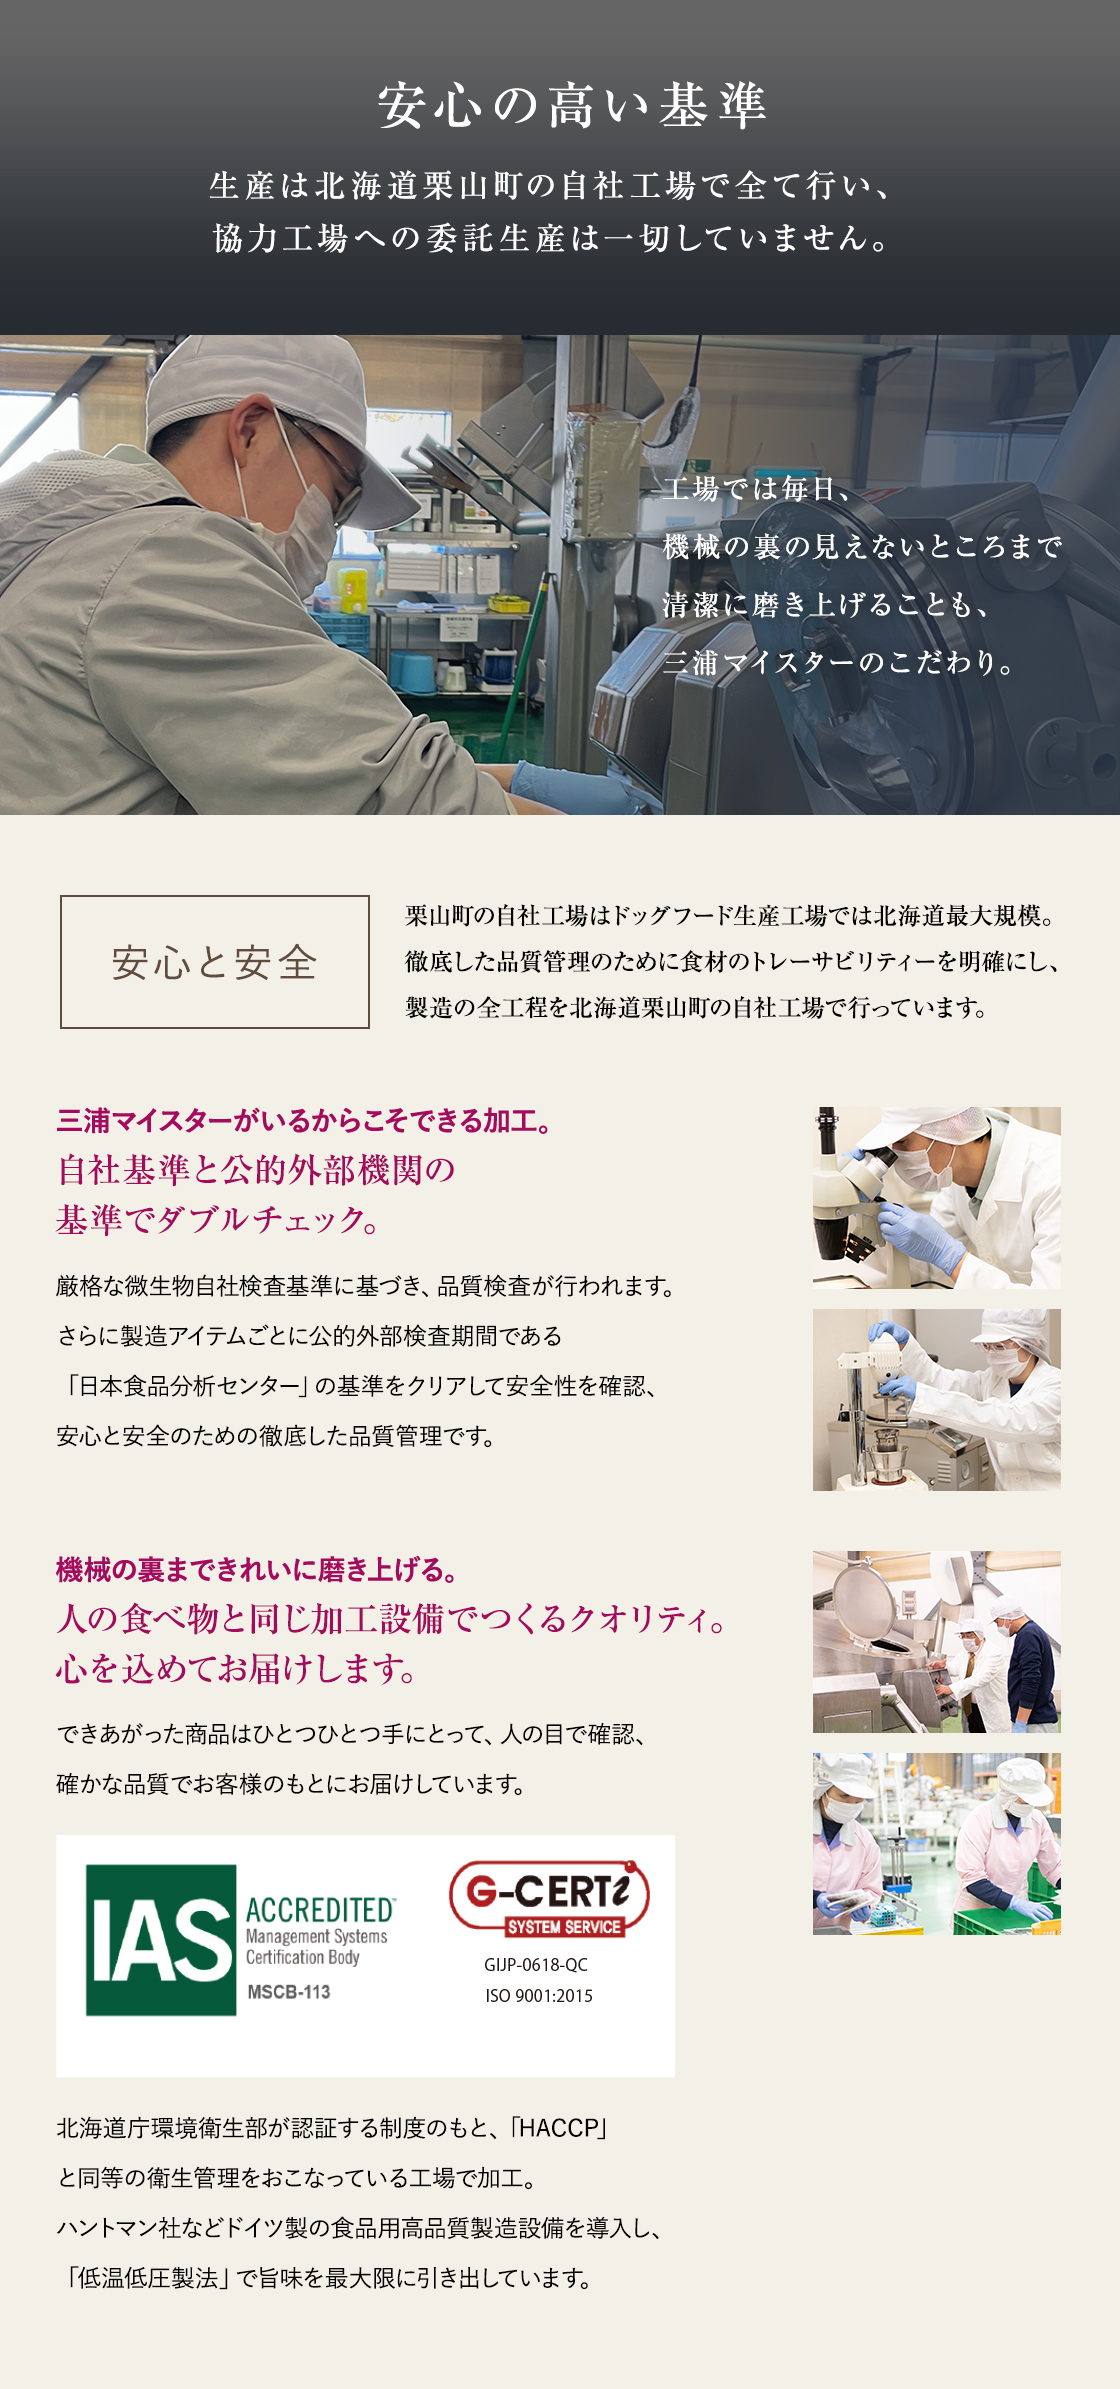 安心の高い基準 生産は北海道栗山町の自社工場で全て行い、協力工場への委託生産は一切していません。